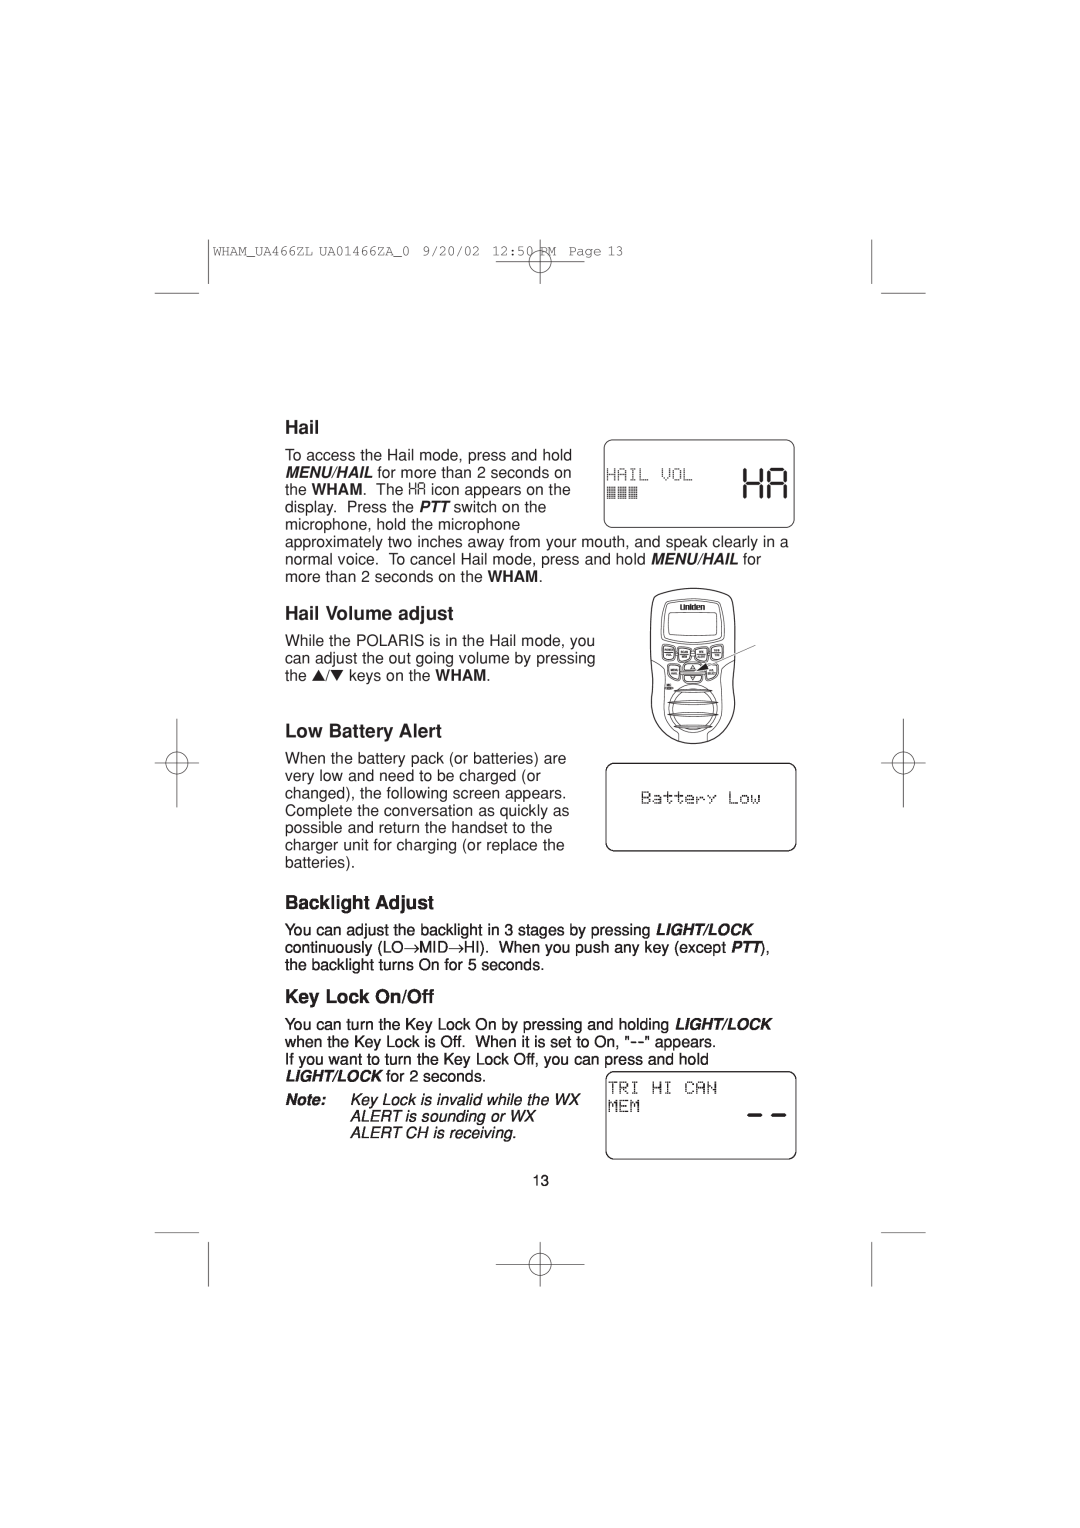 Uniden UA466ZL manual Hail Volume adjust, Low Battery Alert, Backlight Adjust, Key Lock On/Off 